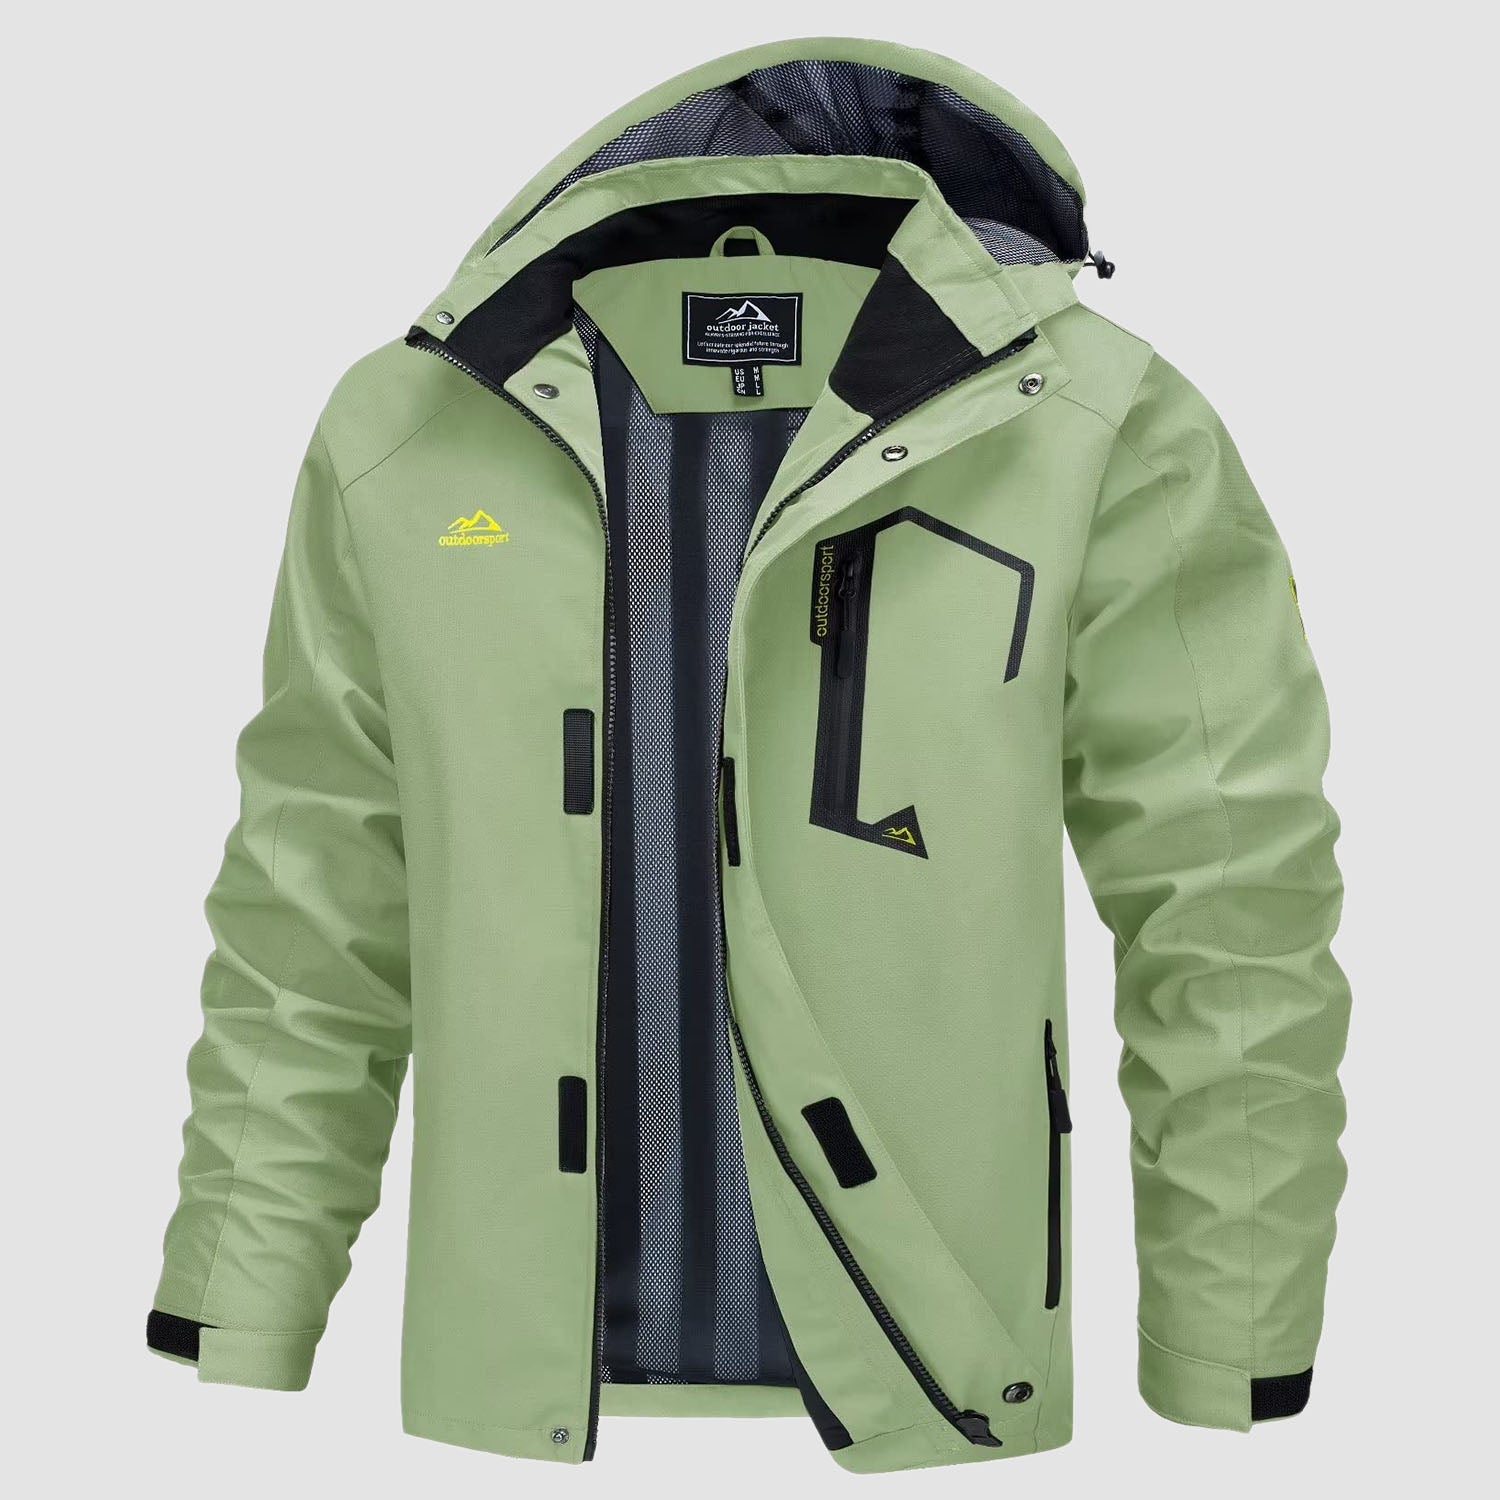 Men's Jacket Water Resistant Windbreaker Coat for Outdoor, Light Green / L